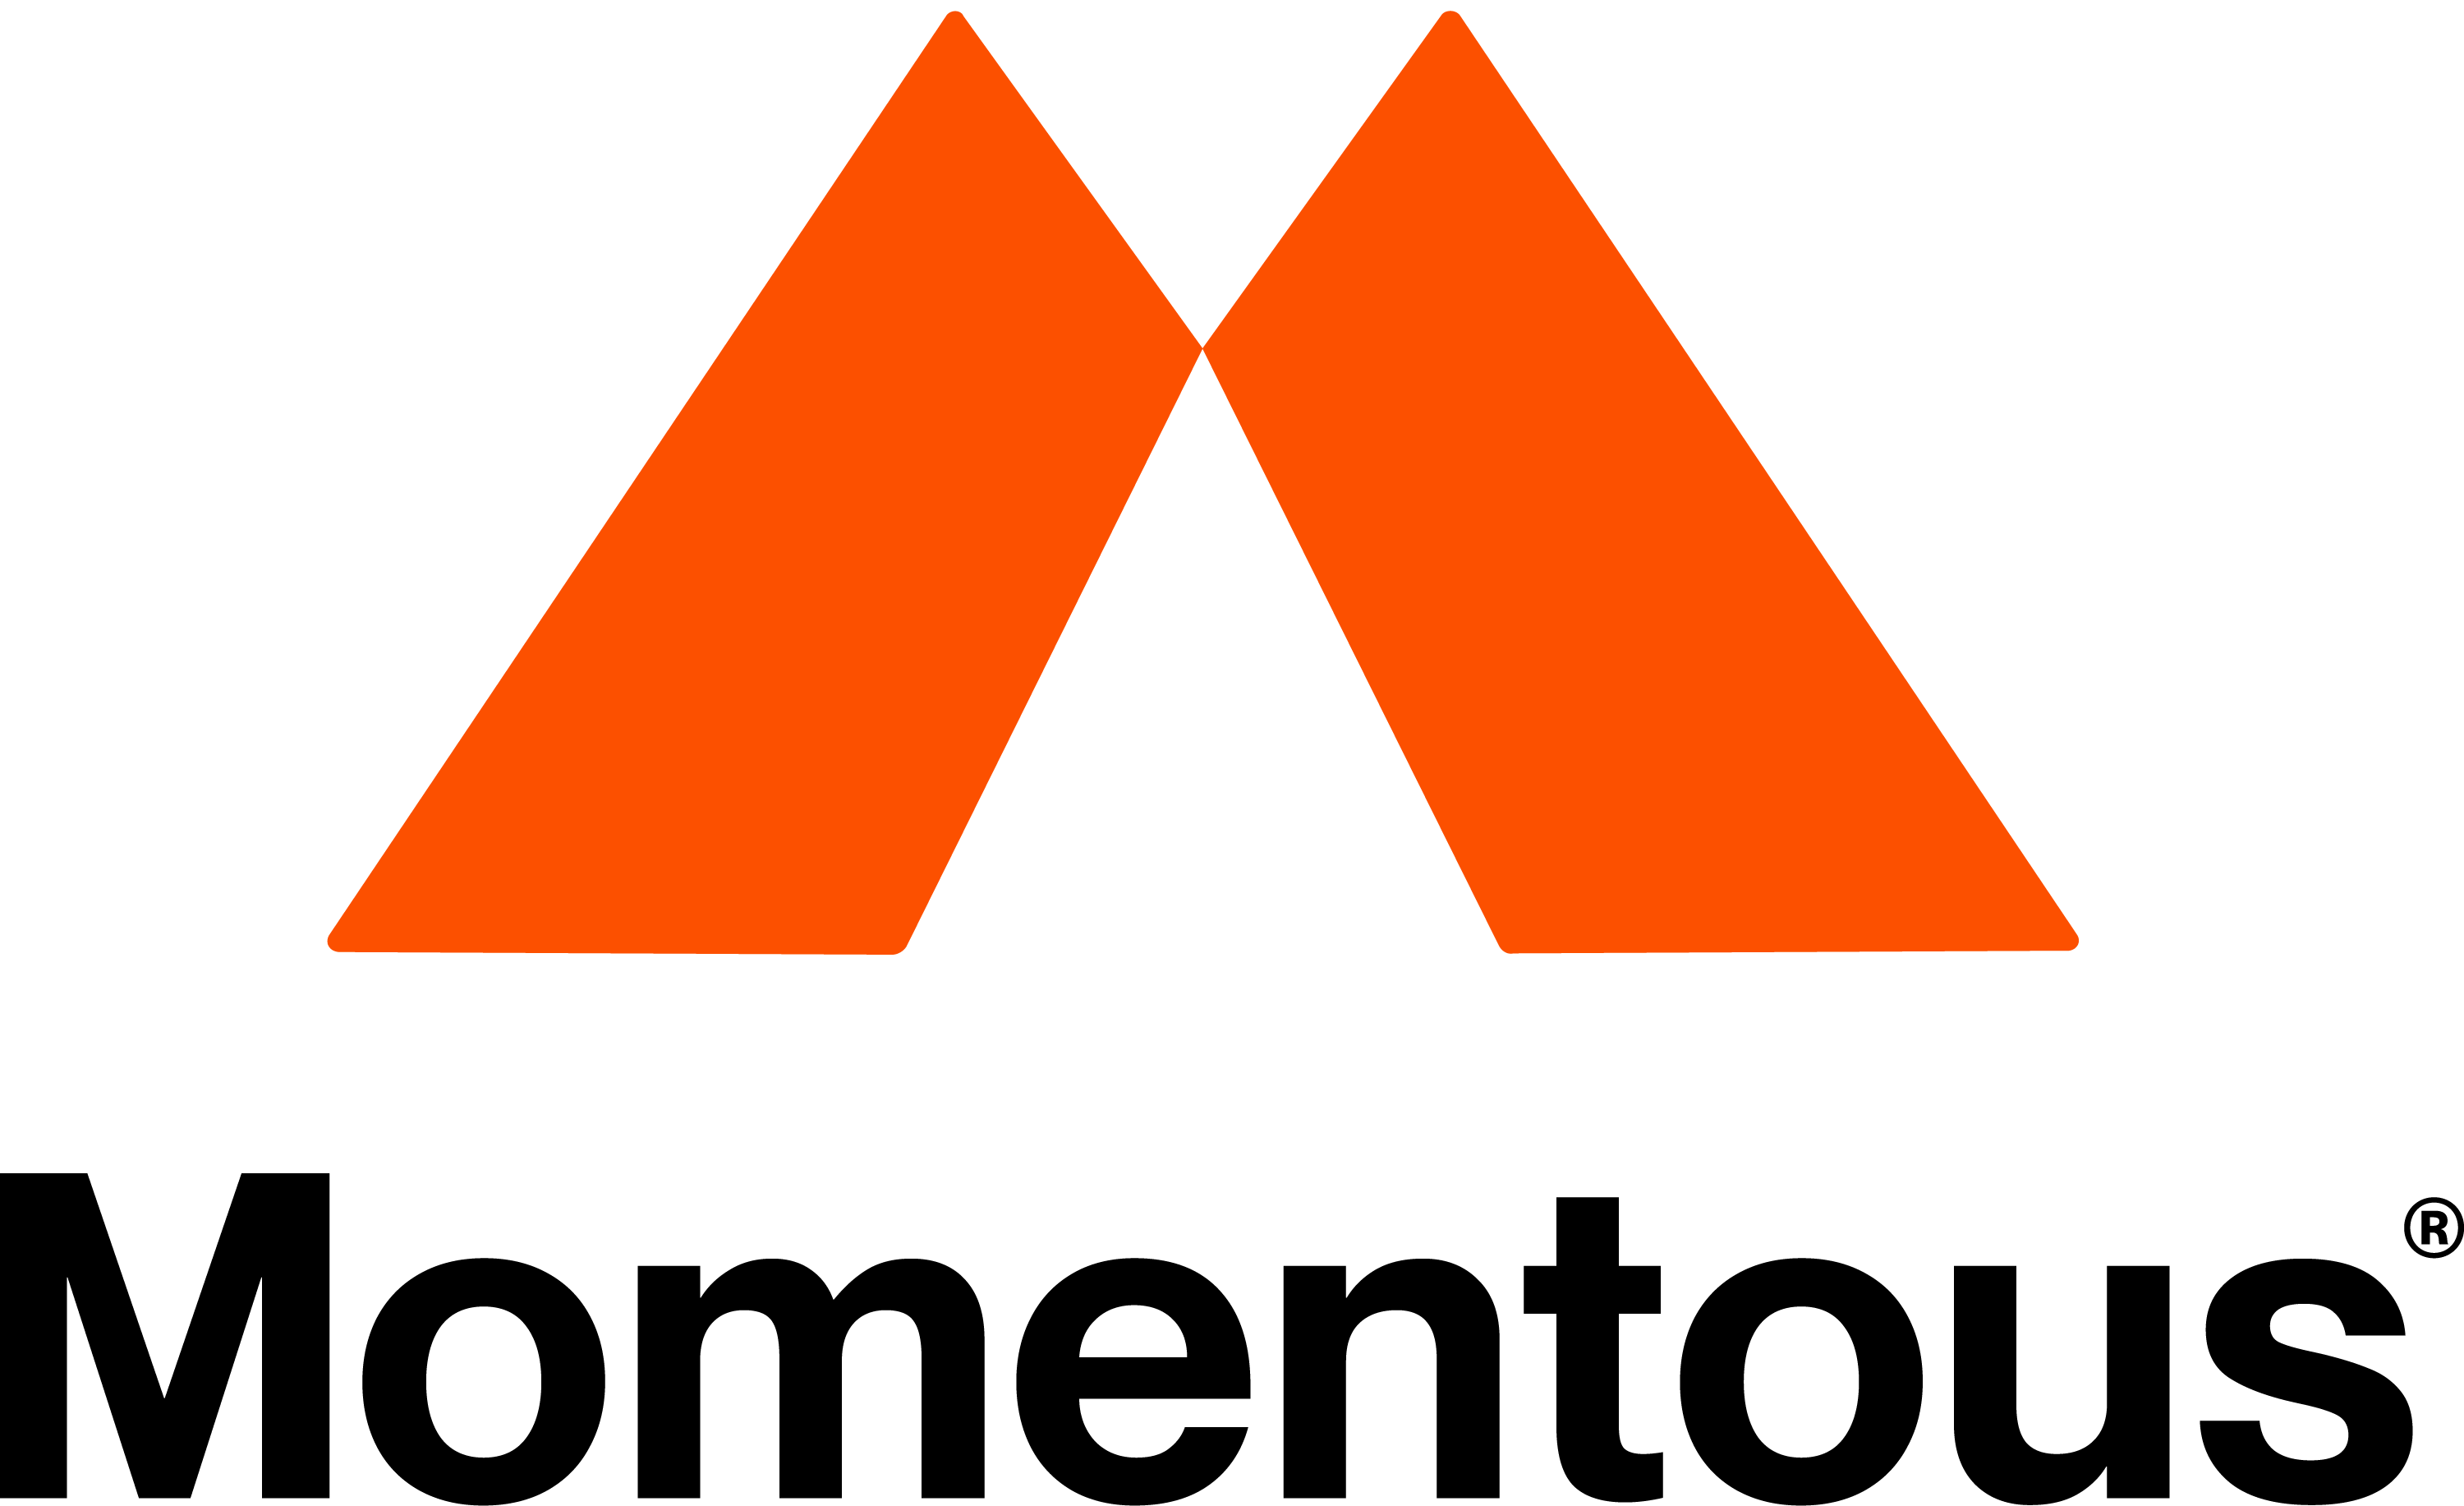 momentous logo